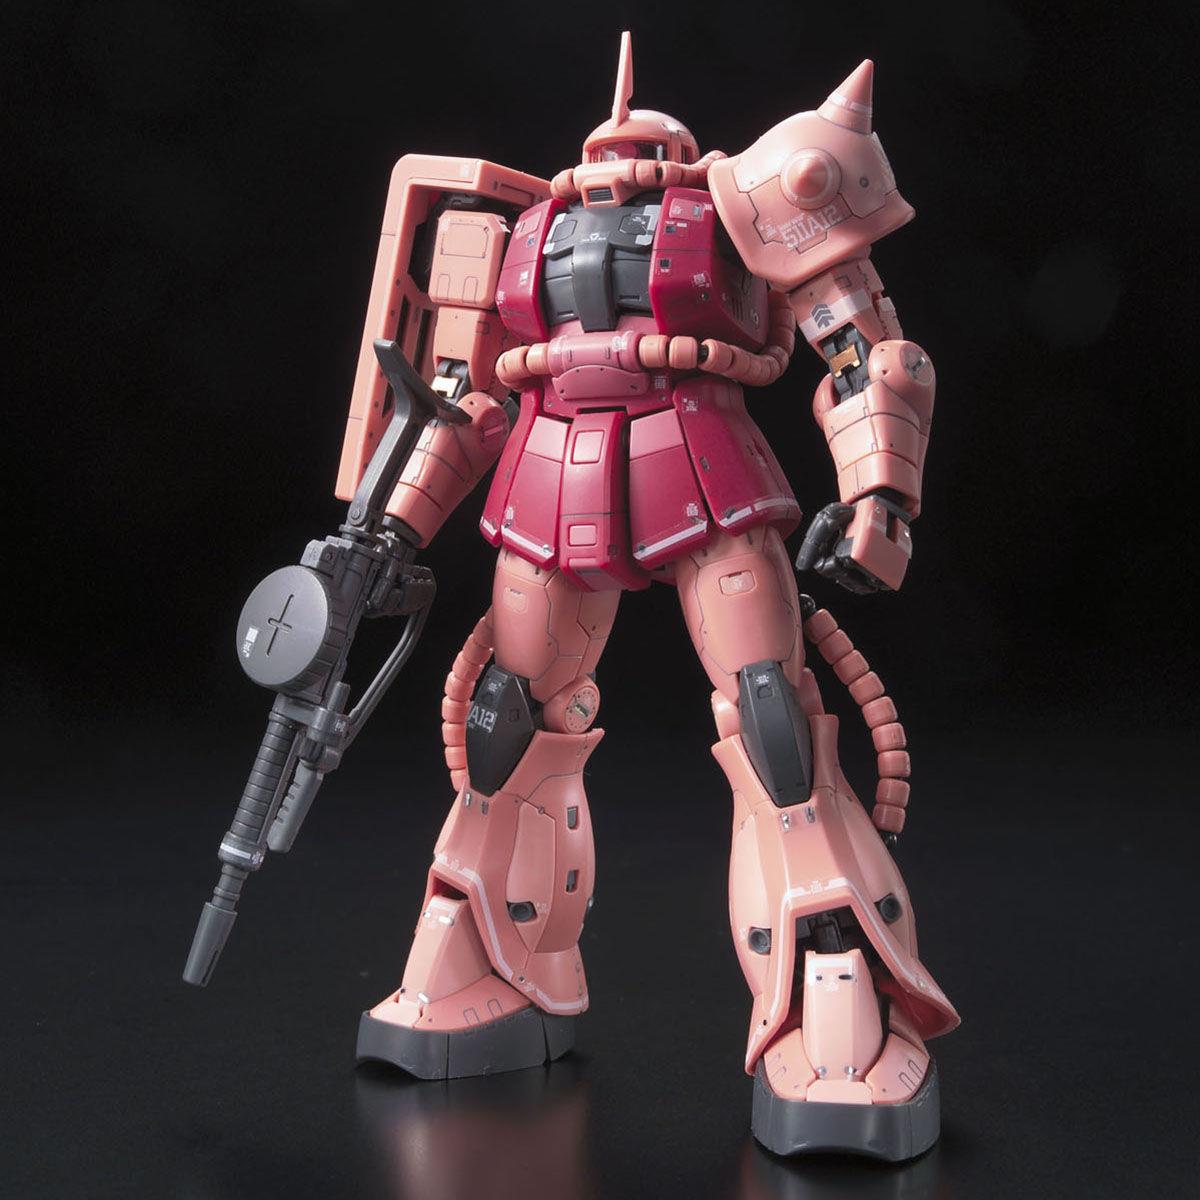 Gundam: Char's Zaku II RG Model